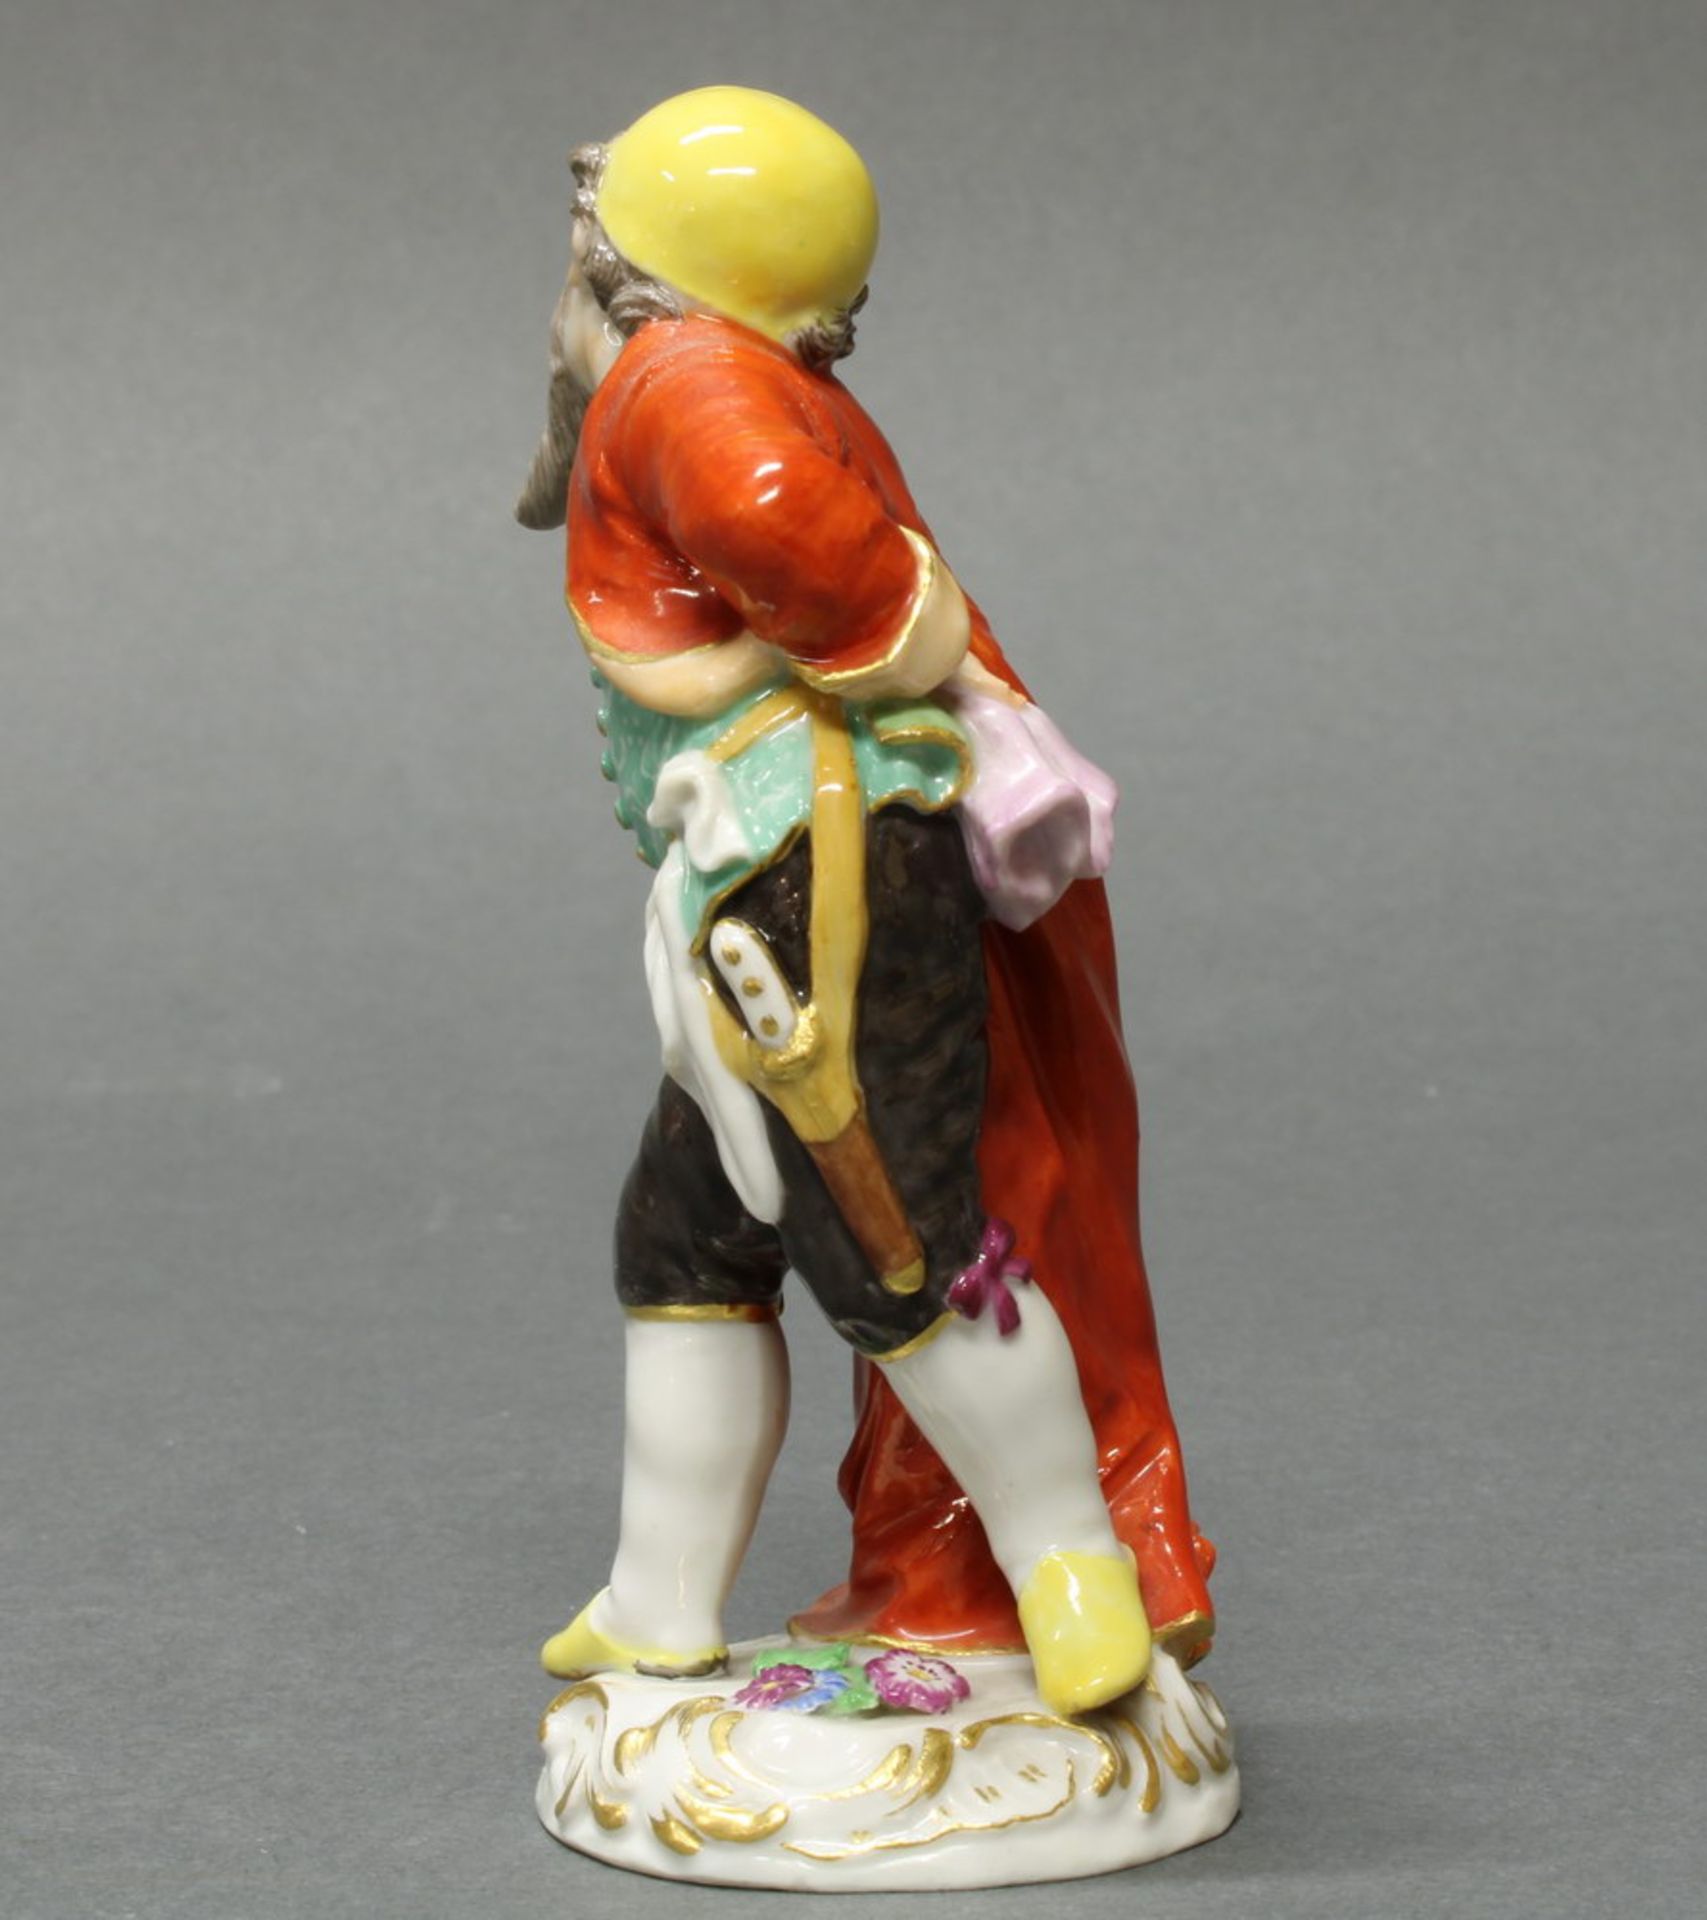 Porzellanfigur, "Pantalone", Meissen, Schwertermarke, 1. Wahl, Modellnummer 11 a, polychrom und - Image 3 of 4